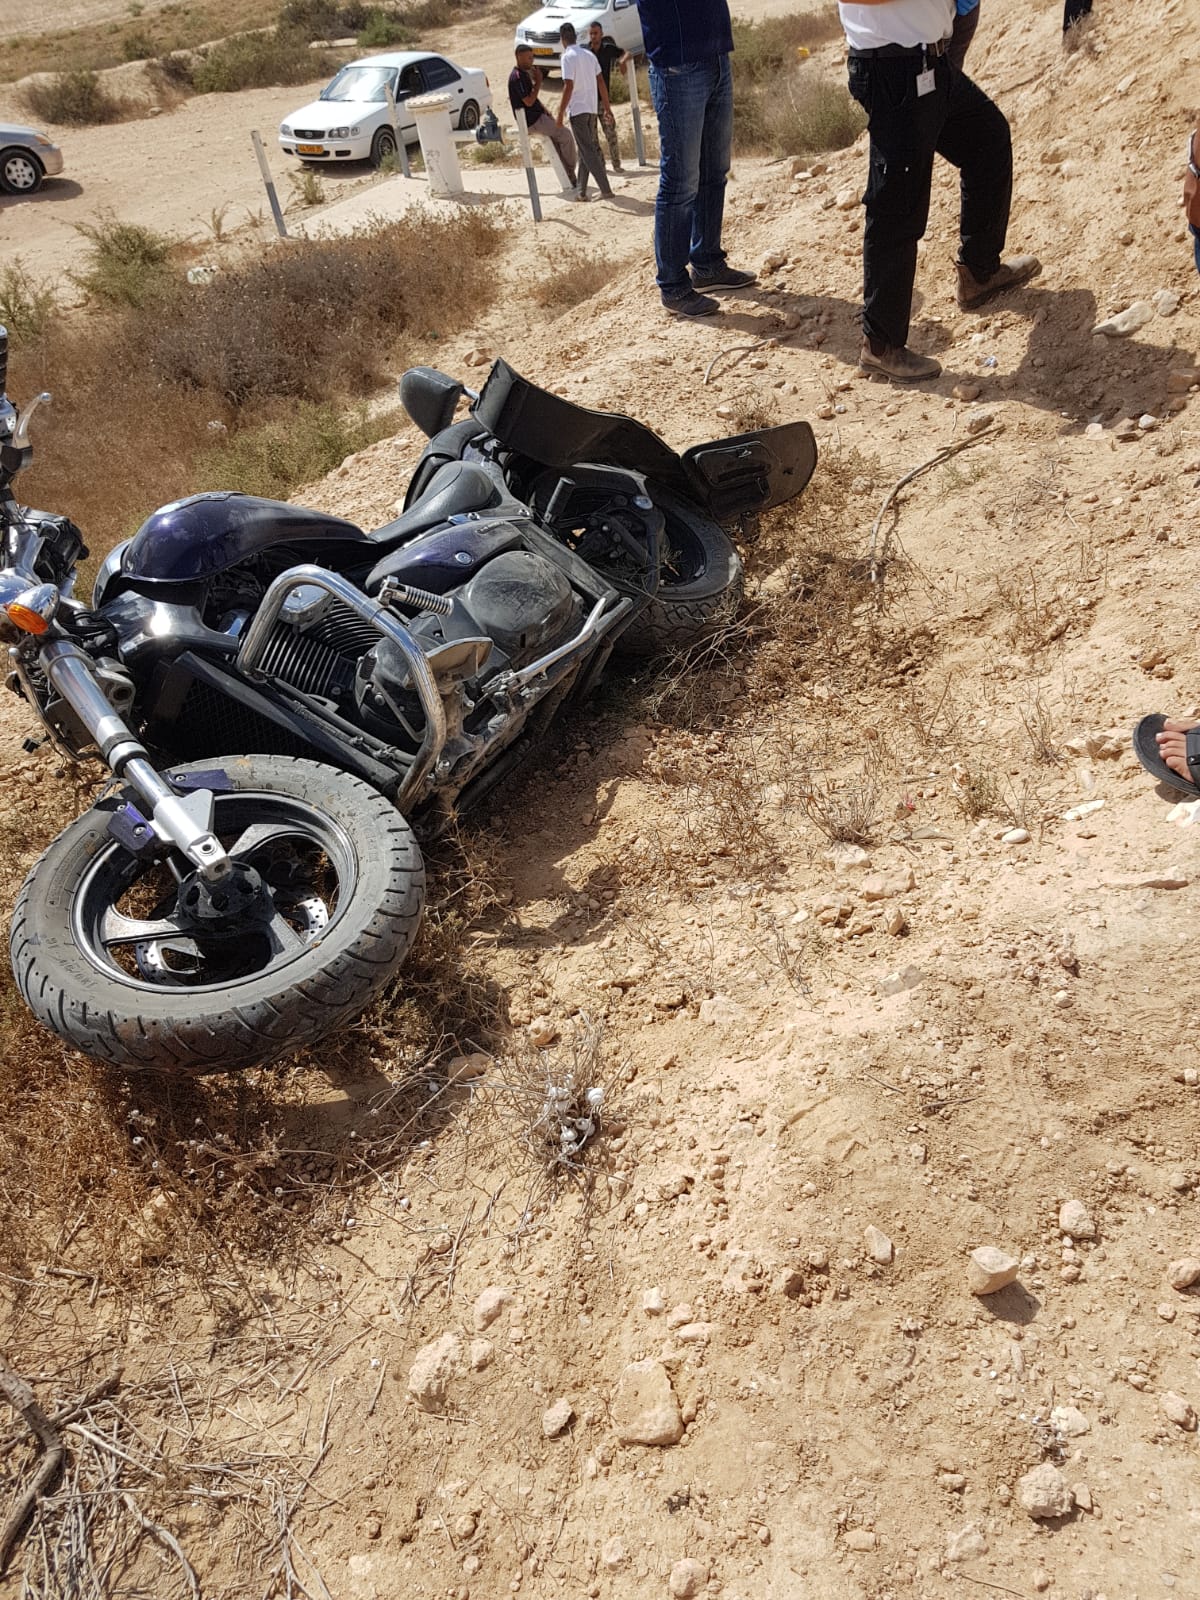 רוכב האופנוע החליק אל וואדי סמוך ונהרג. צילום: תיעוד מבצעי מד"א